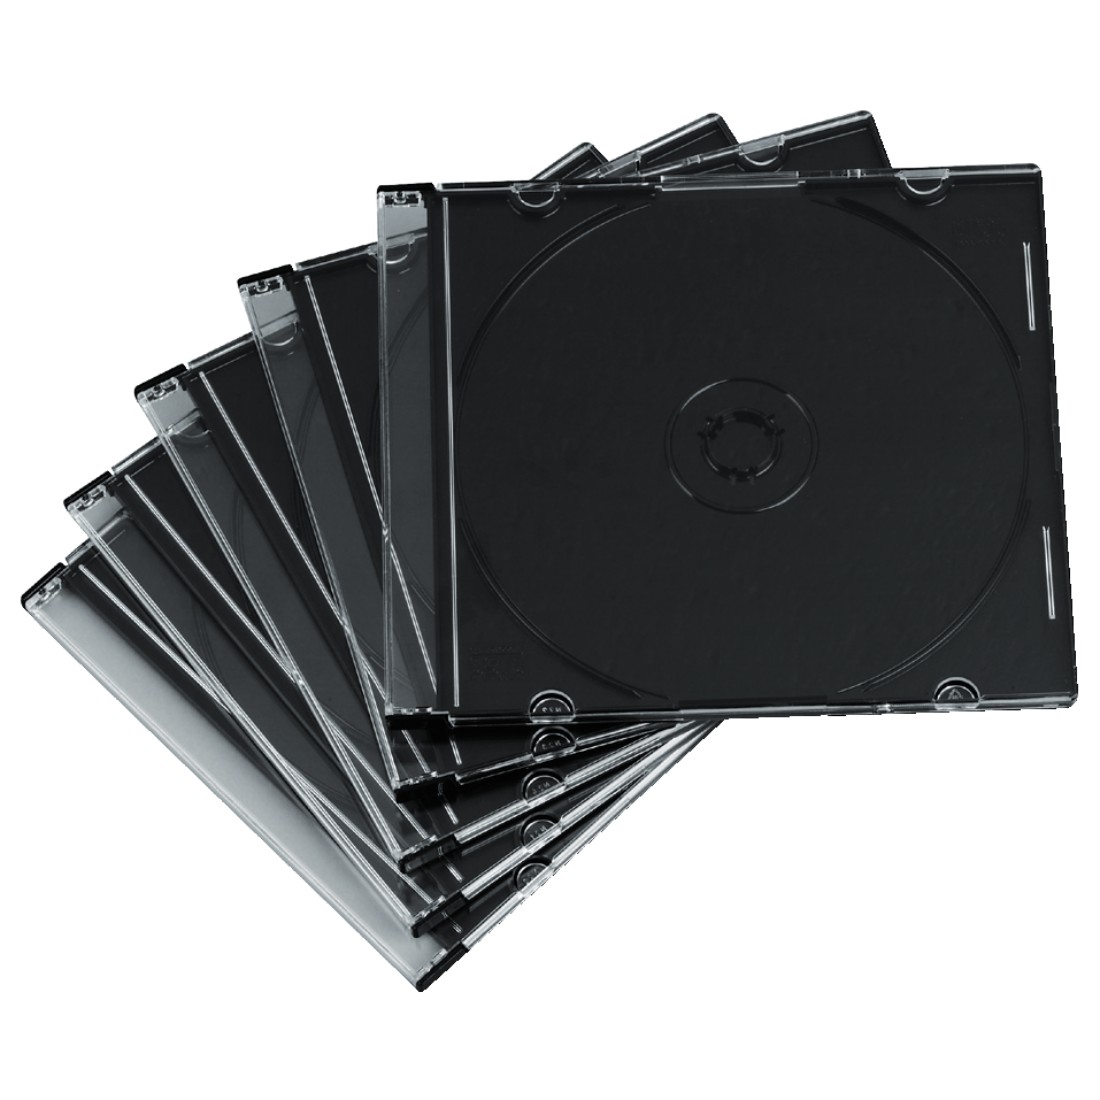 Компакт коробки. Hama CD Box Slim. Бокс на 1 CD Slim (CD-Box). Бокс для дисков 1cd Jewel Case черный. Бокс для дисков 1cd Slim Case черный.